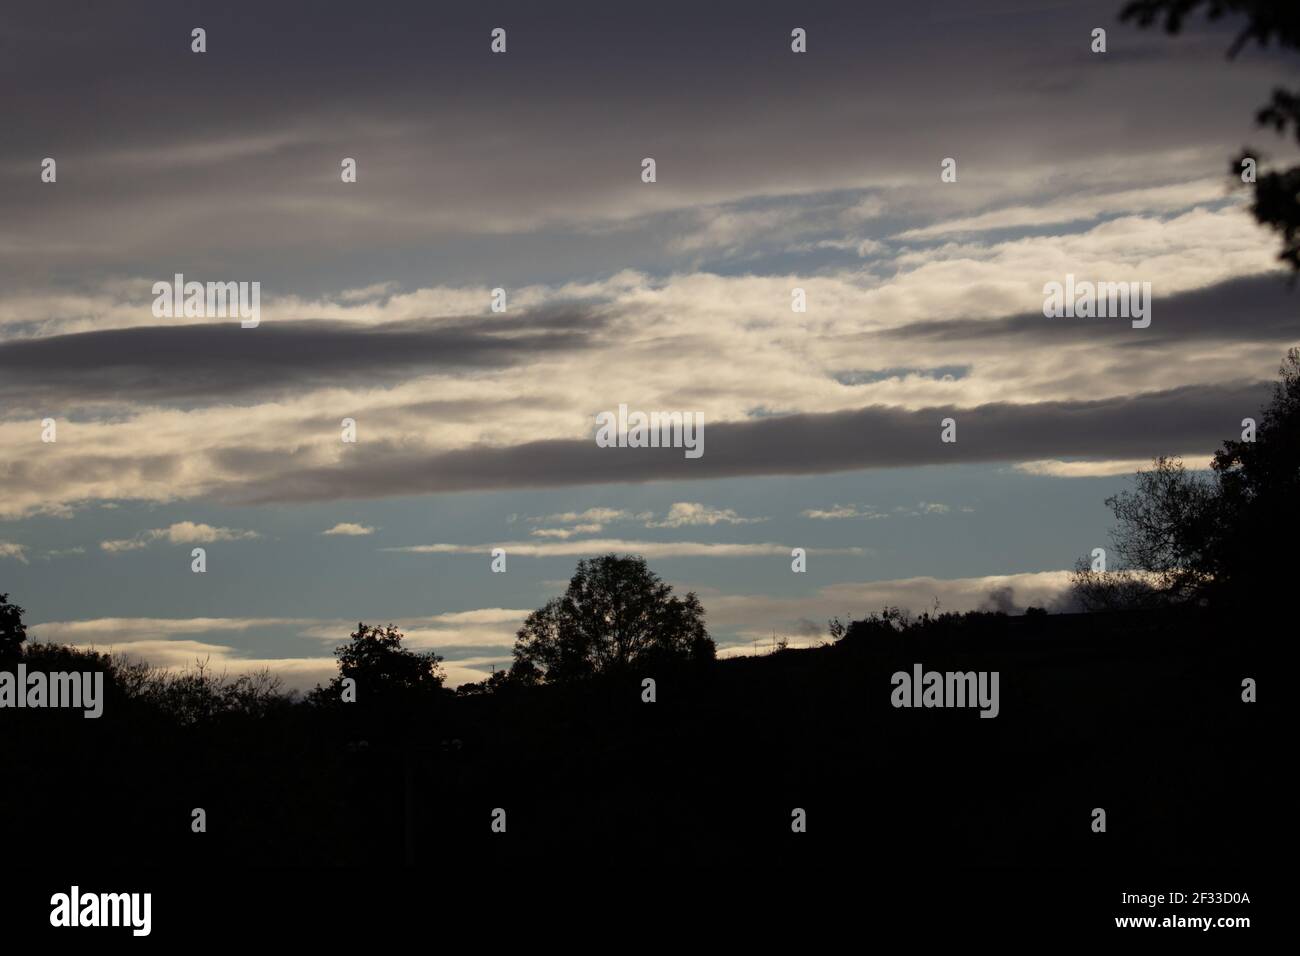 silhouette di alberi e una collina contro le nuvole e. cielo azzurro chiaro in serata Foto Stock